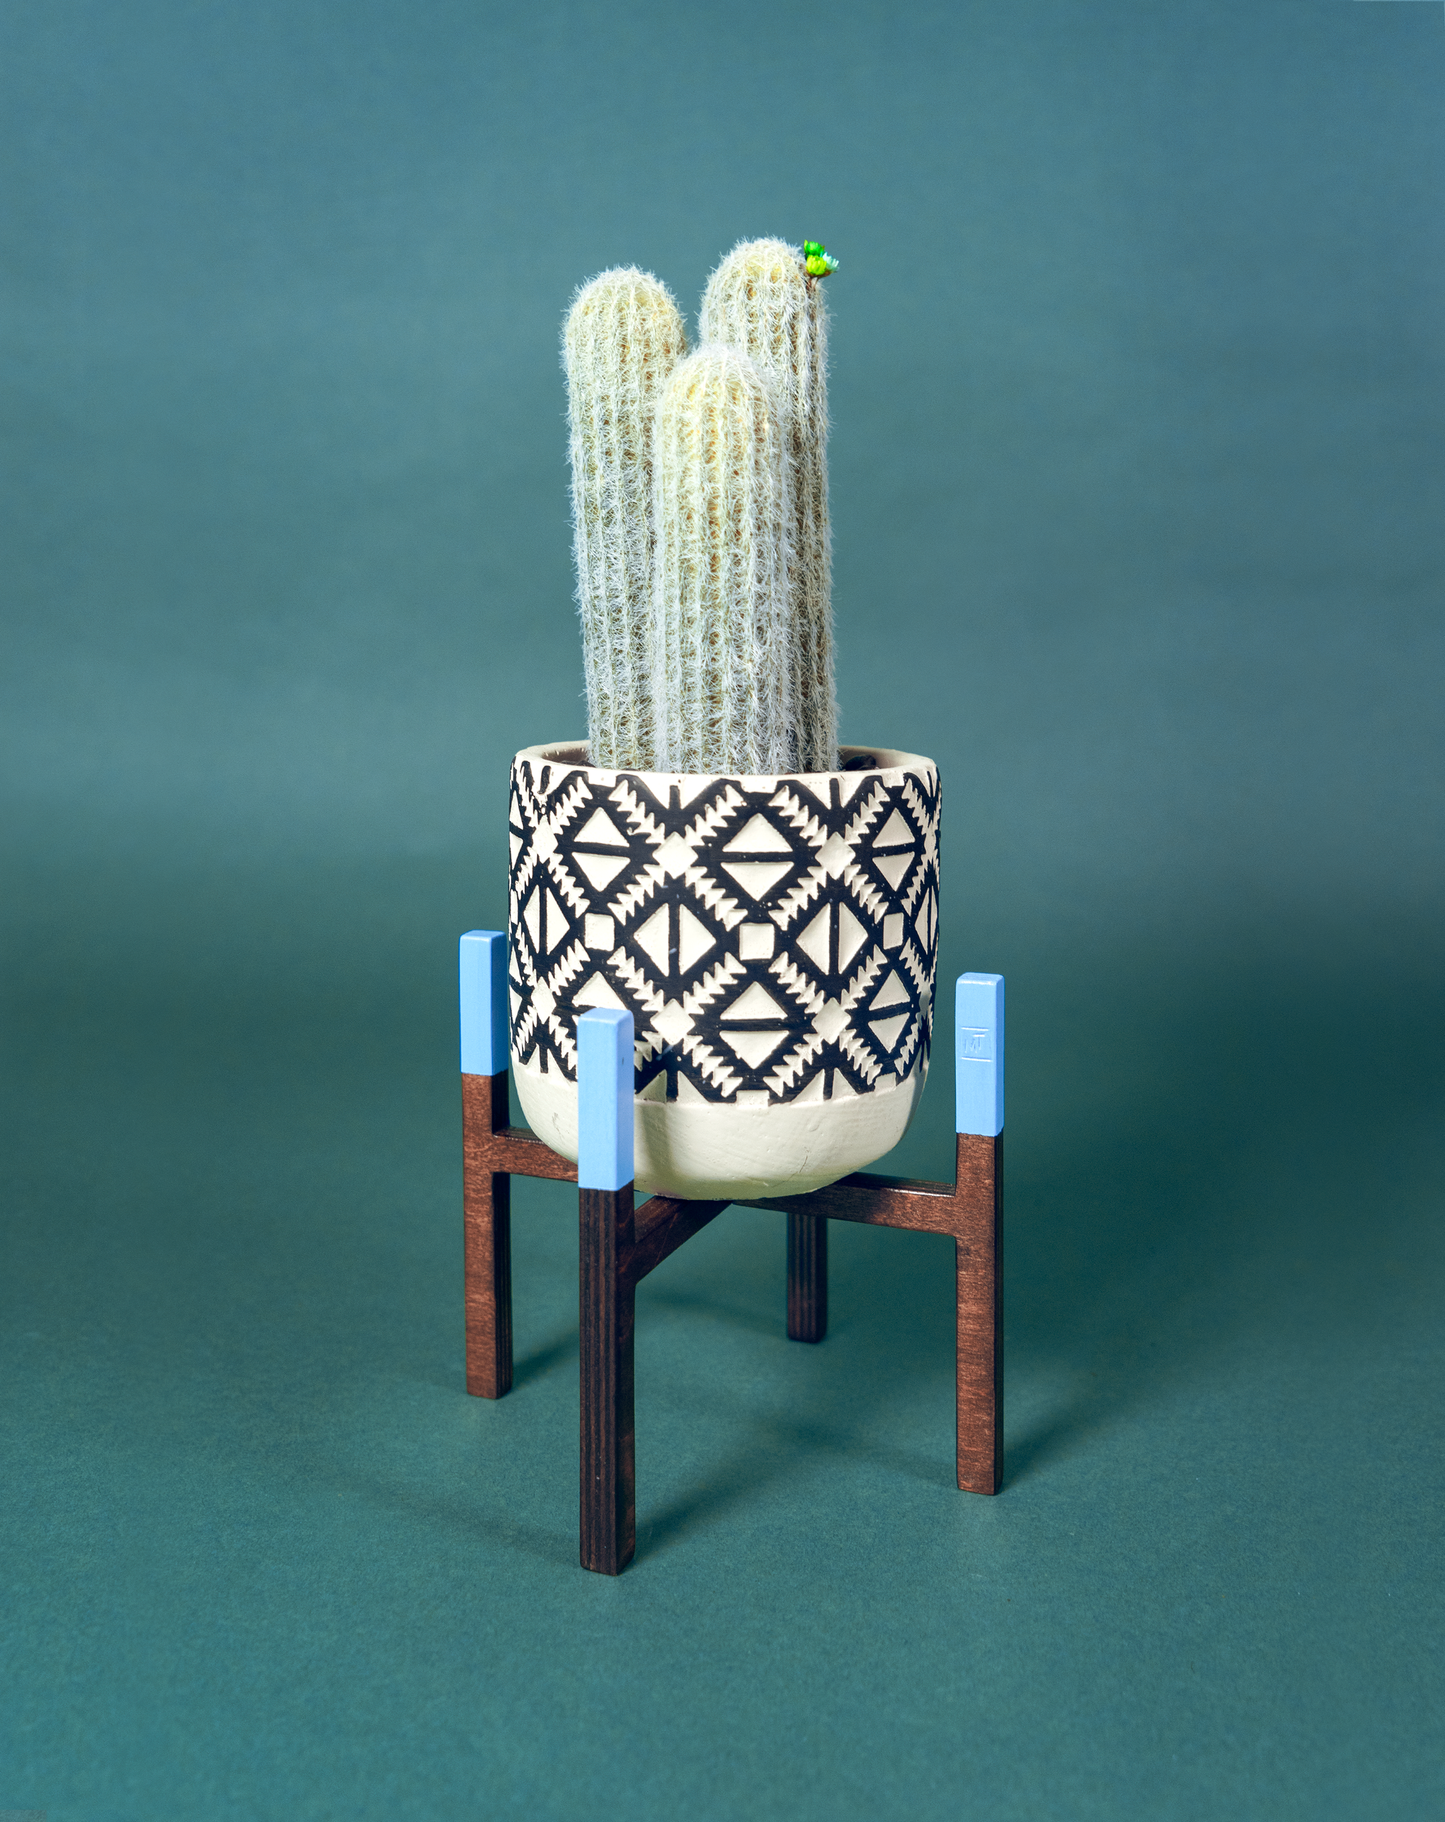 Cactus est soutenu par un piédestal ITUS MINIMA Céleste de la marque Maison Tessier derrière un fond vert